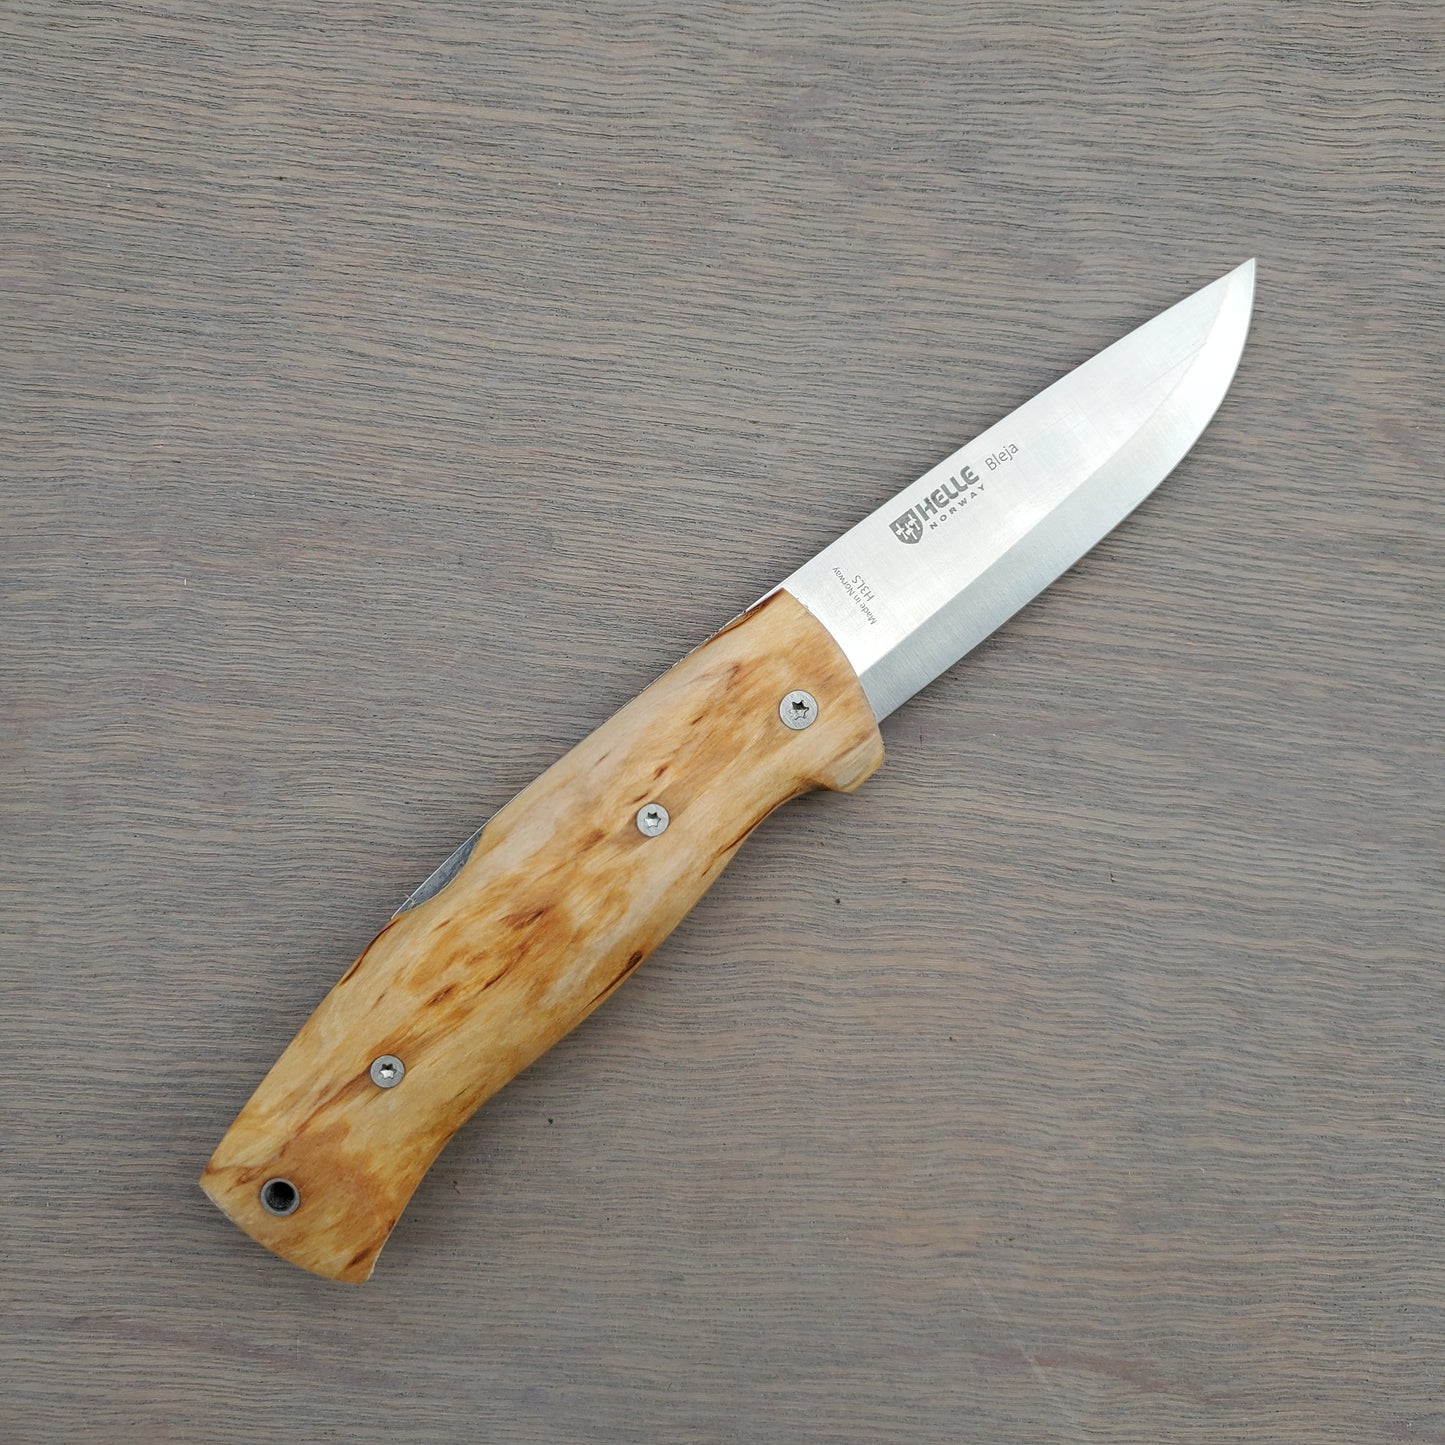 Helle Bleja 3.5" Folding Knife